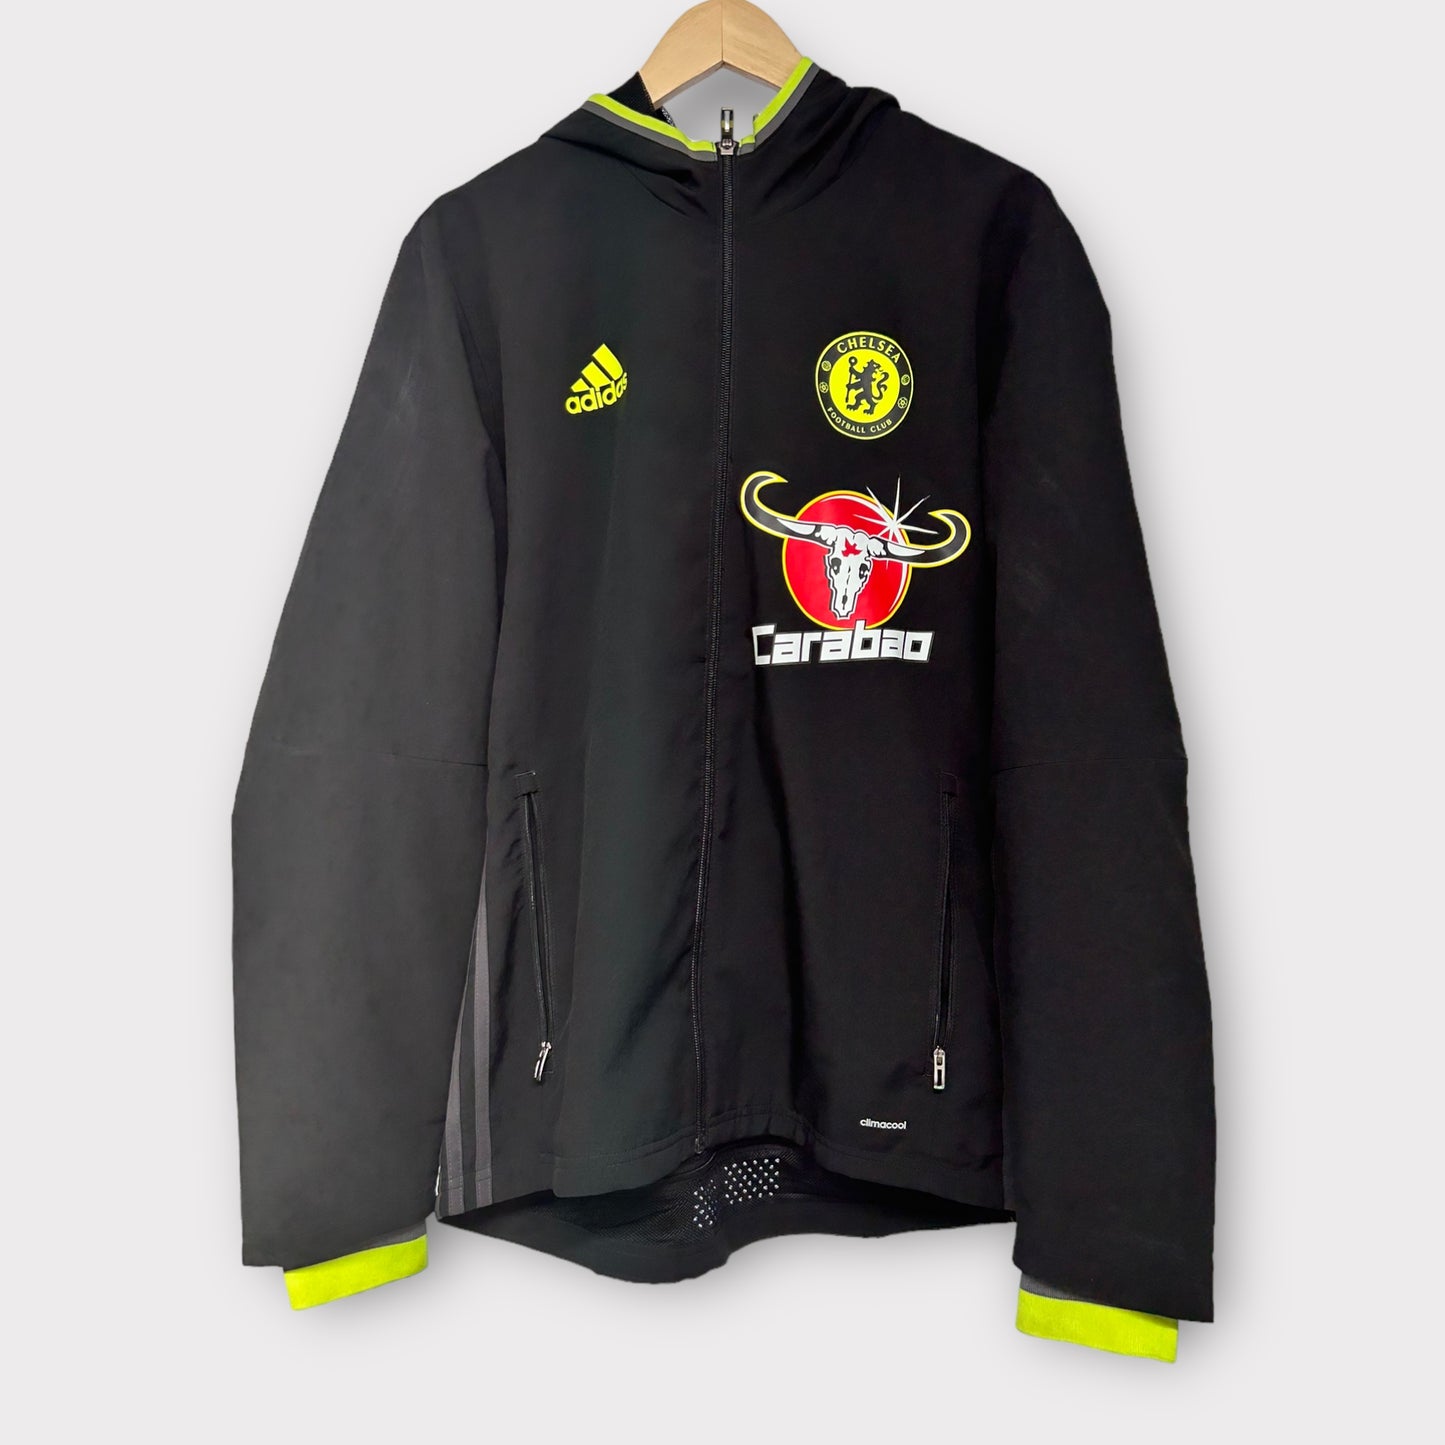 Chelsea 2016/17 Adidas Jacket (Medium)